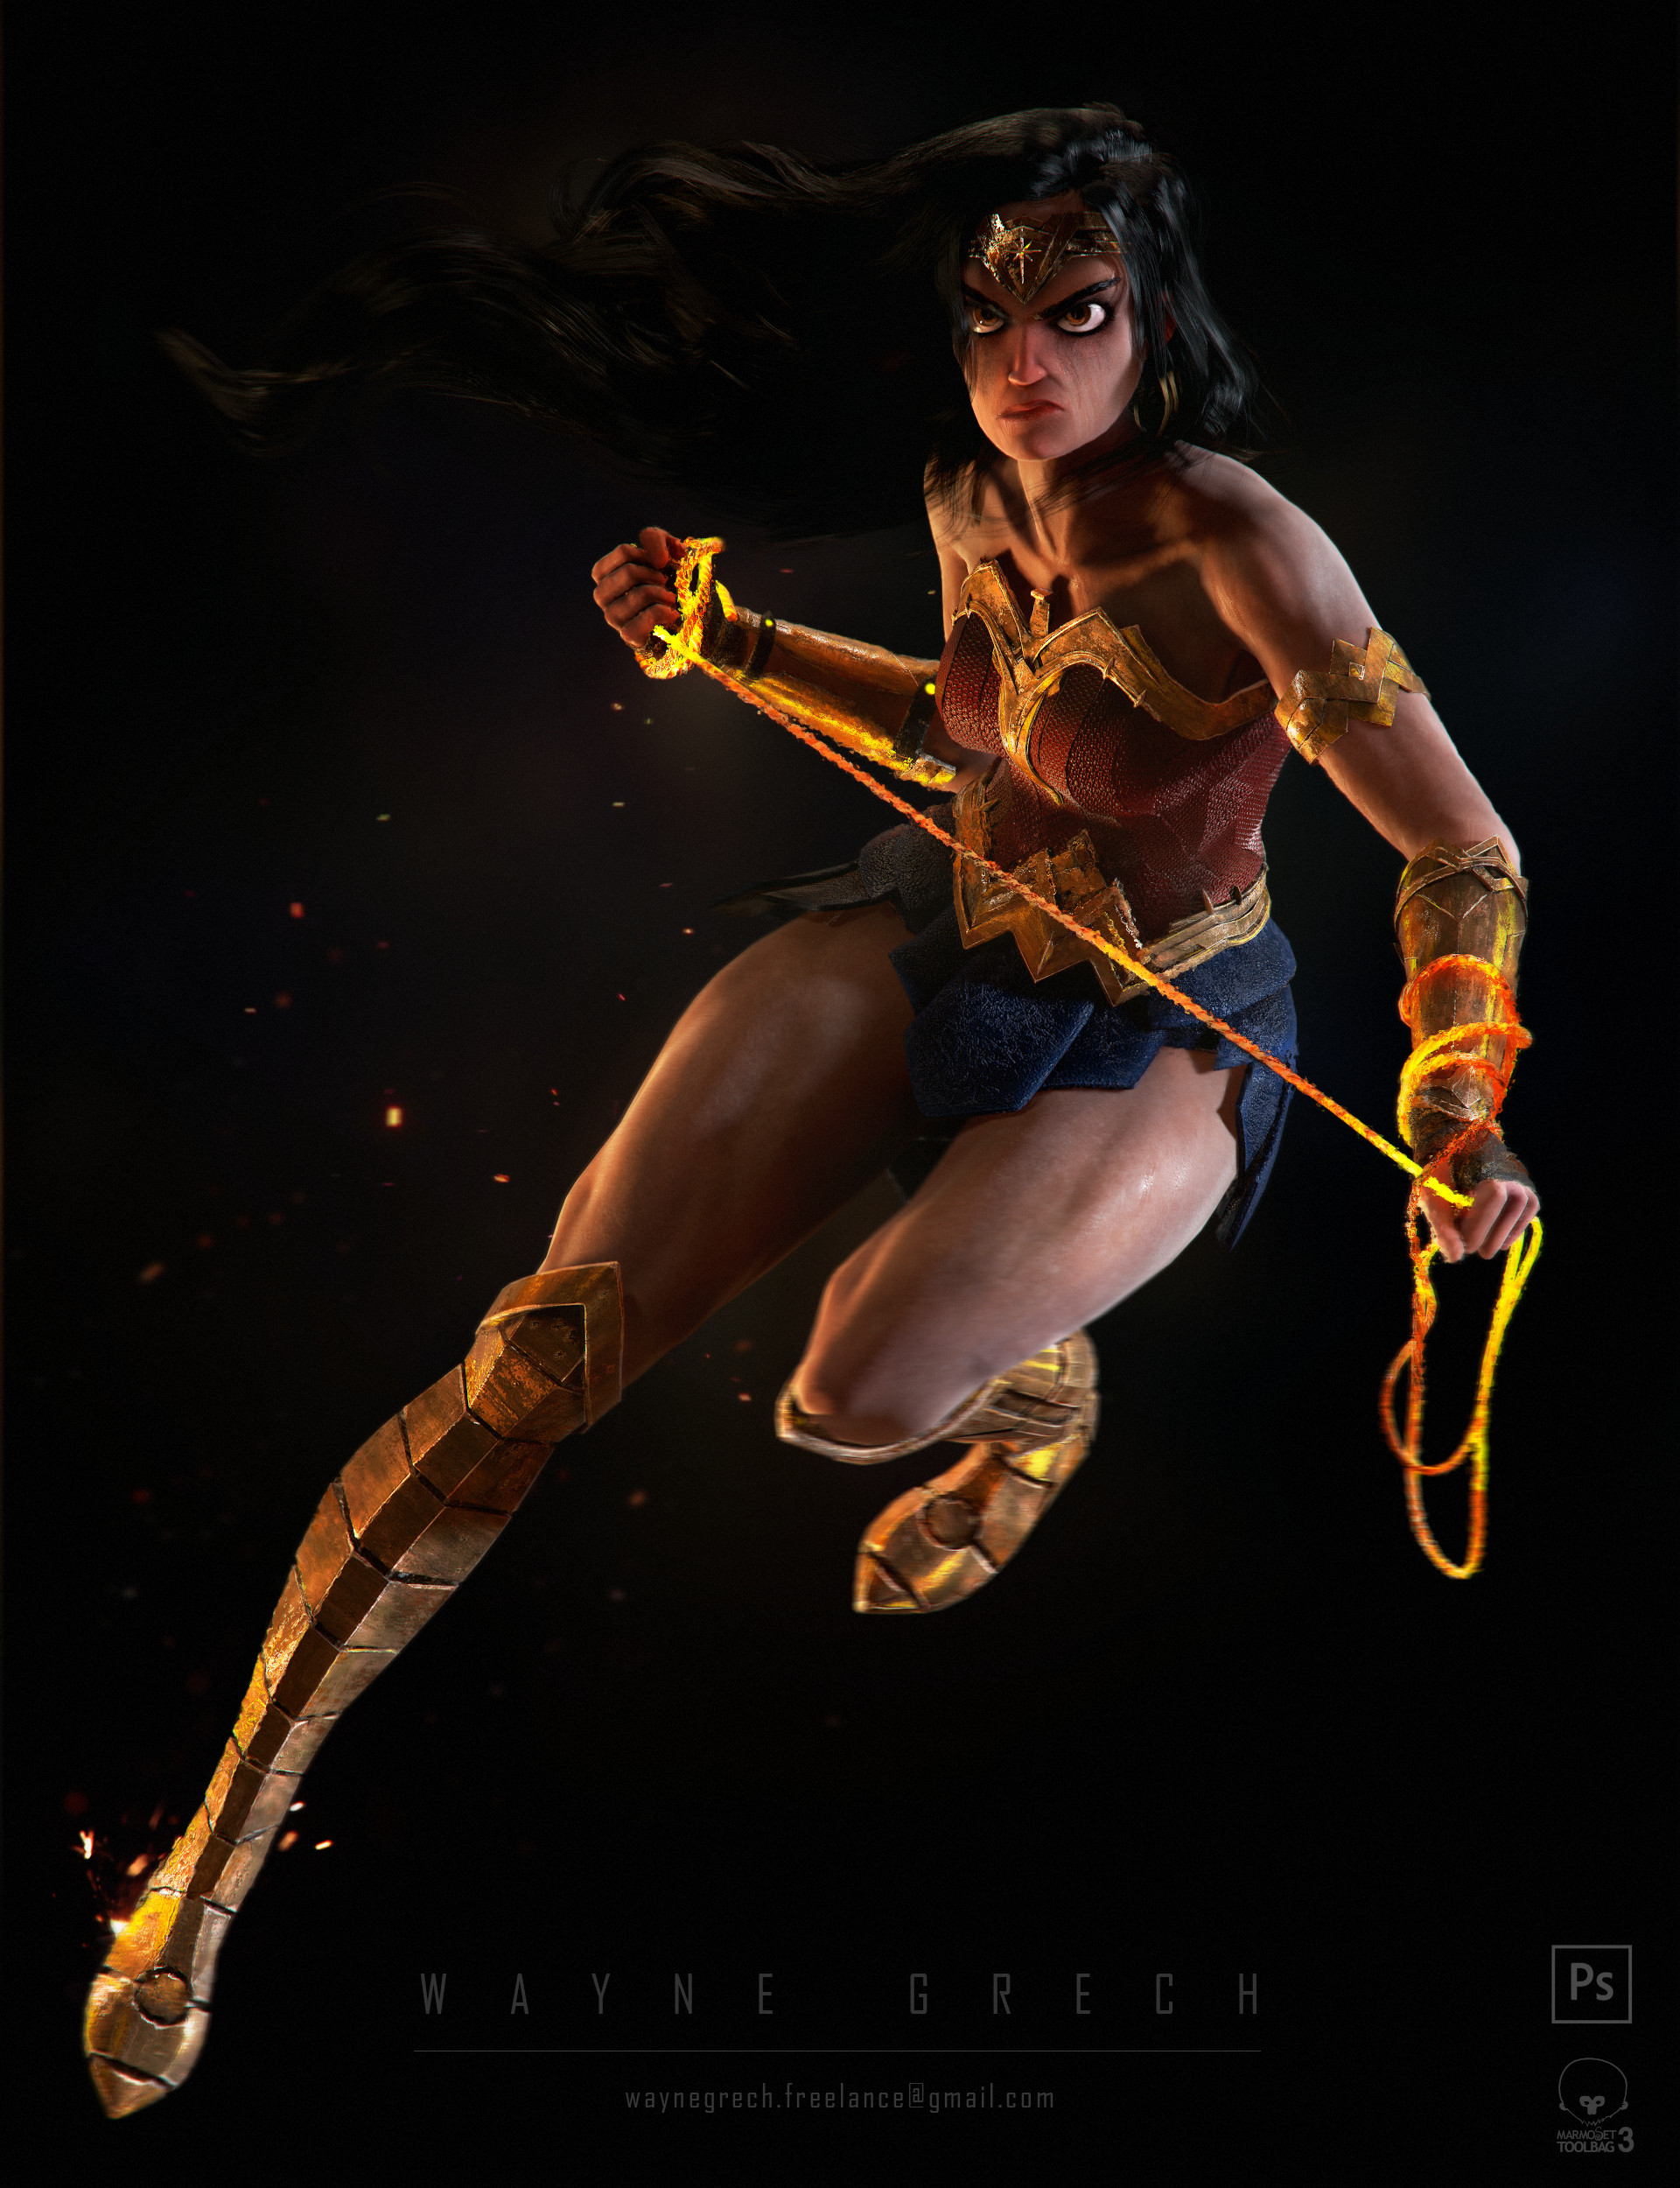 HEROINE CHIC - Wonder Woman Flash Games Gameplay - Rooster Teeth